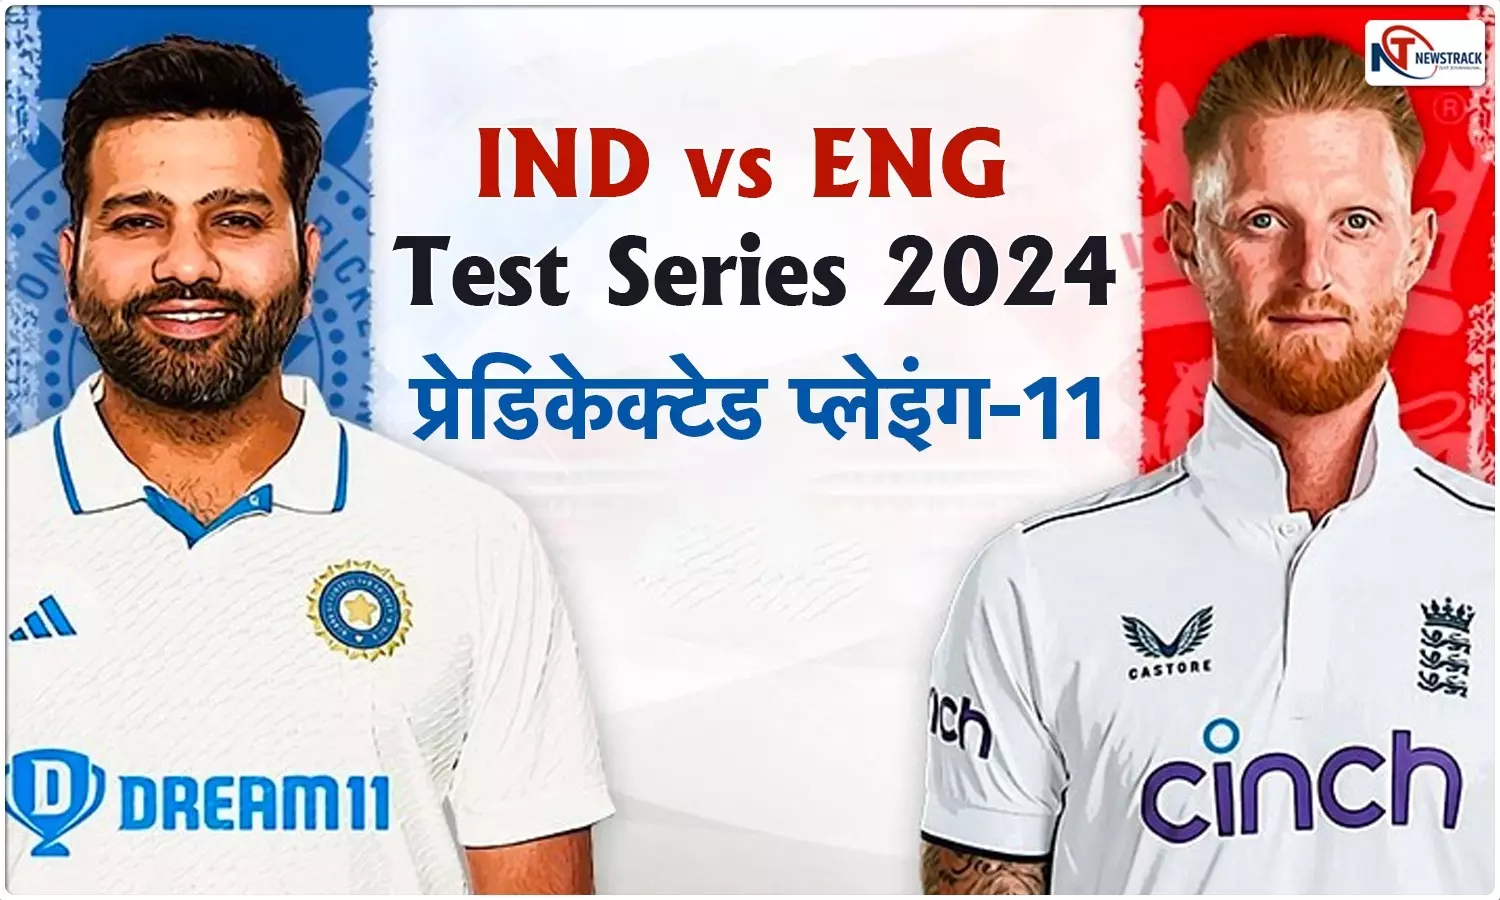 IND vs ENG 3rd Test